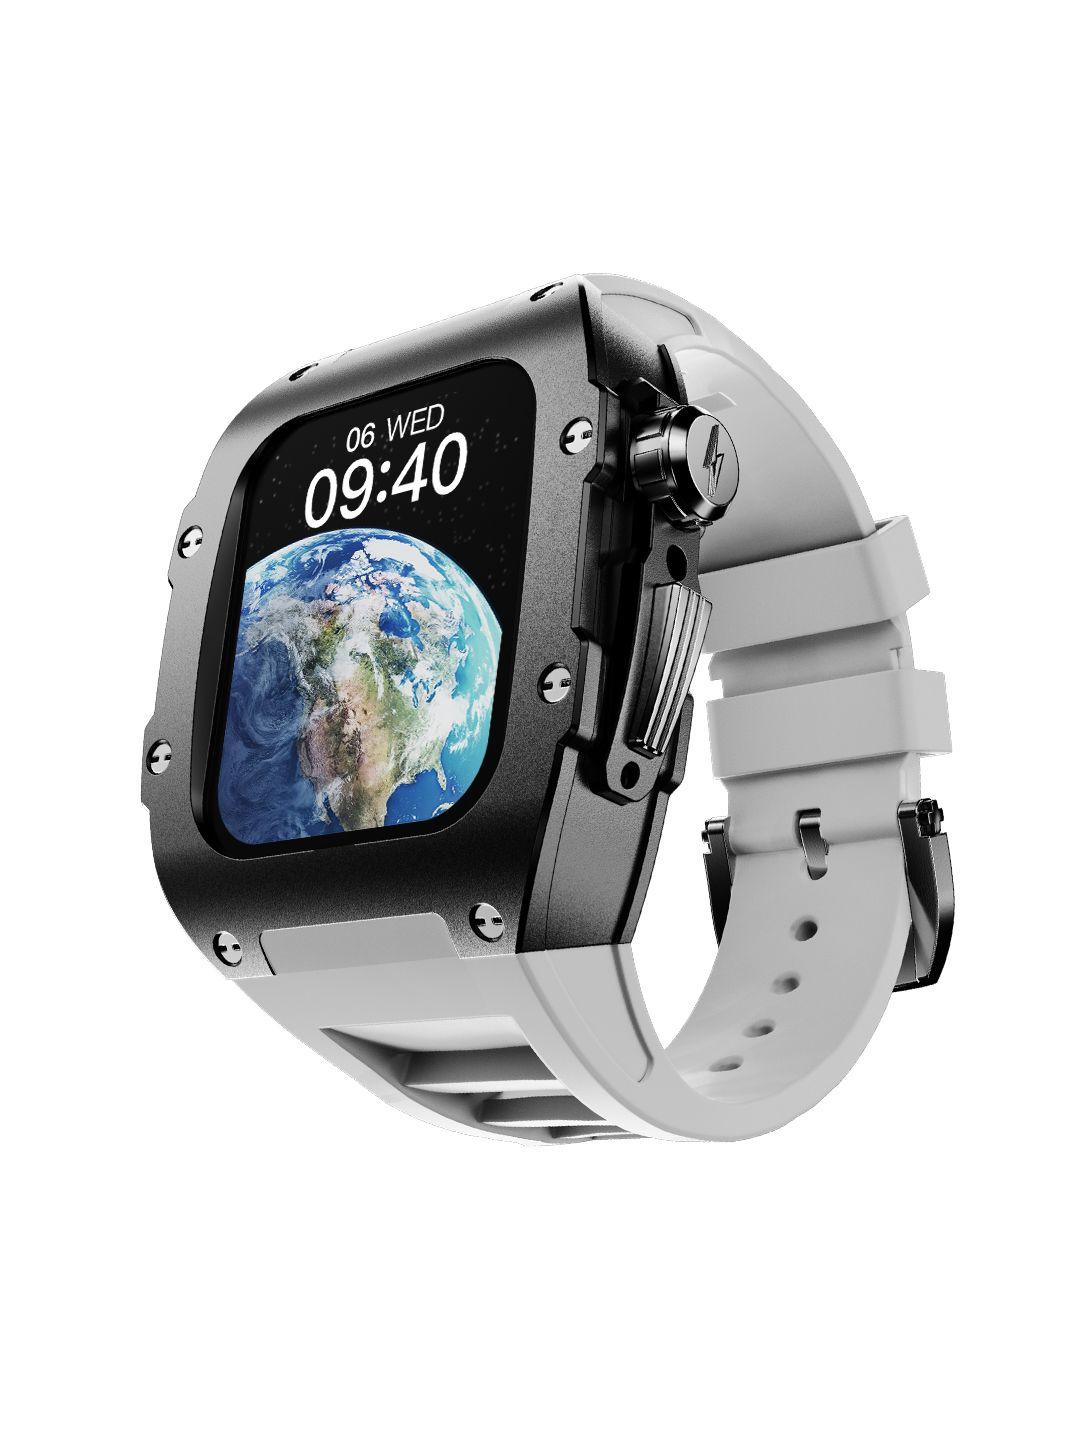 fire-boltt huracan 1.95" ips display smartwatch with bt calling